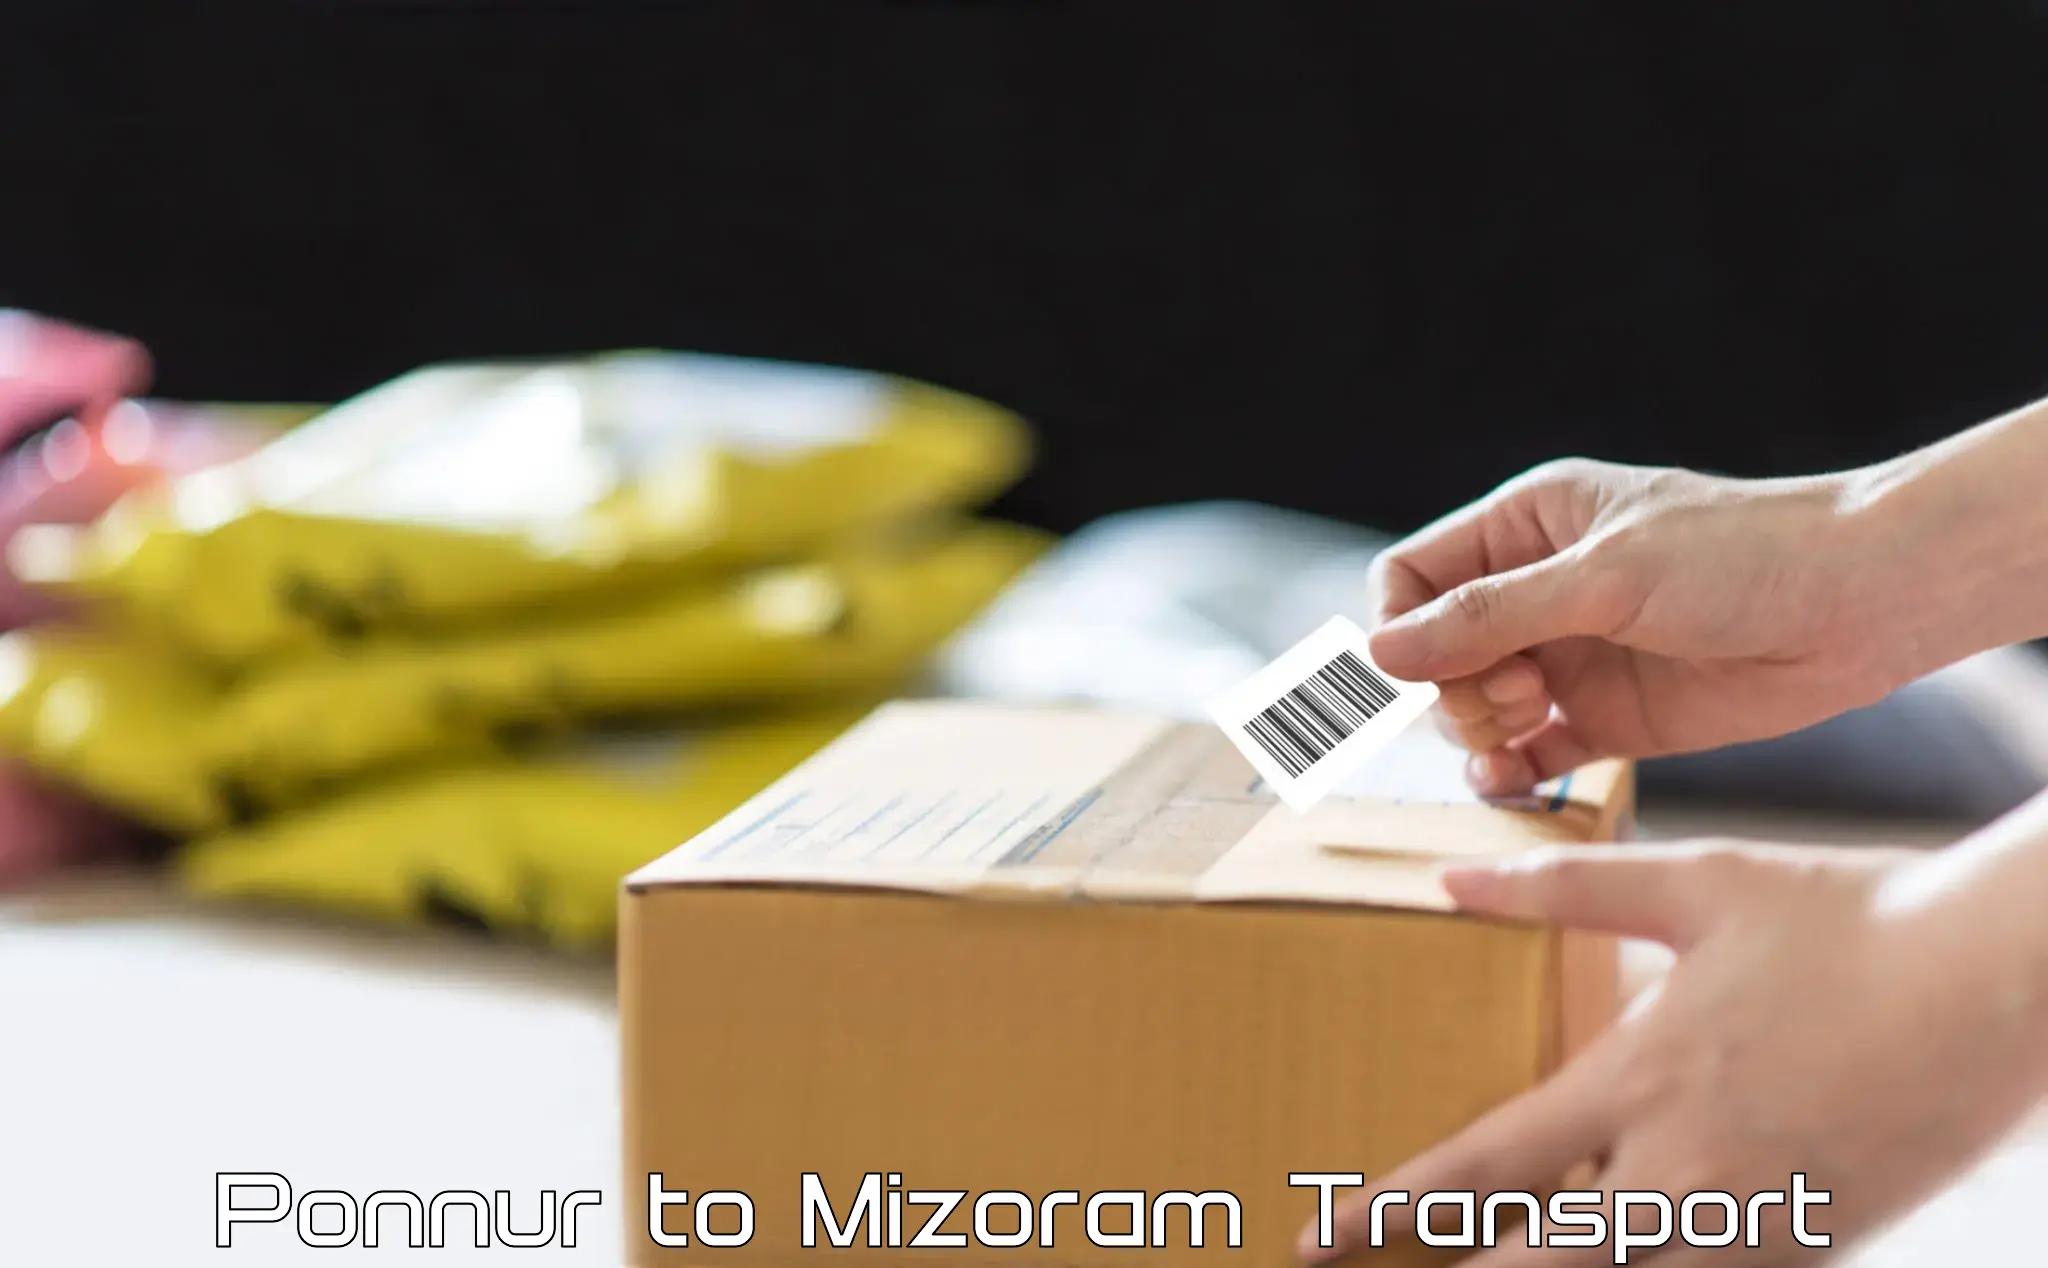 Container transport service Ponnur to Mizoram